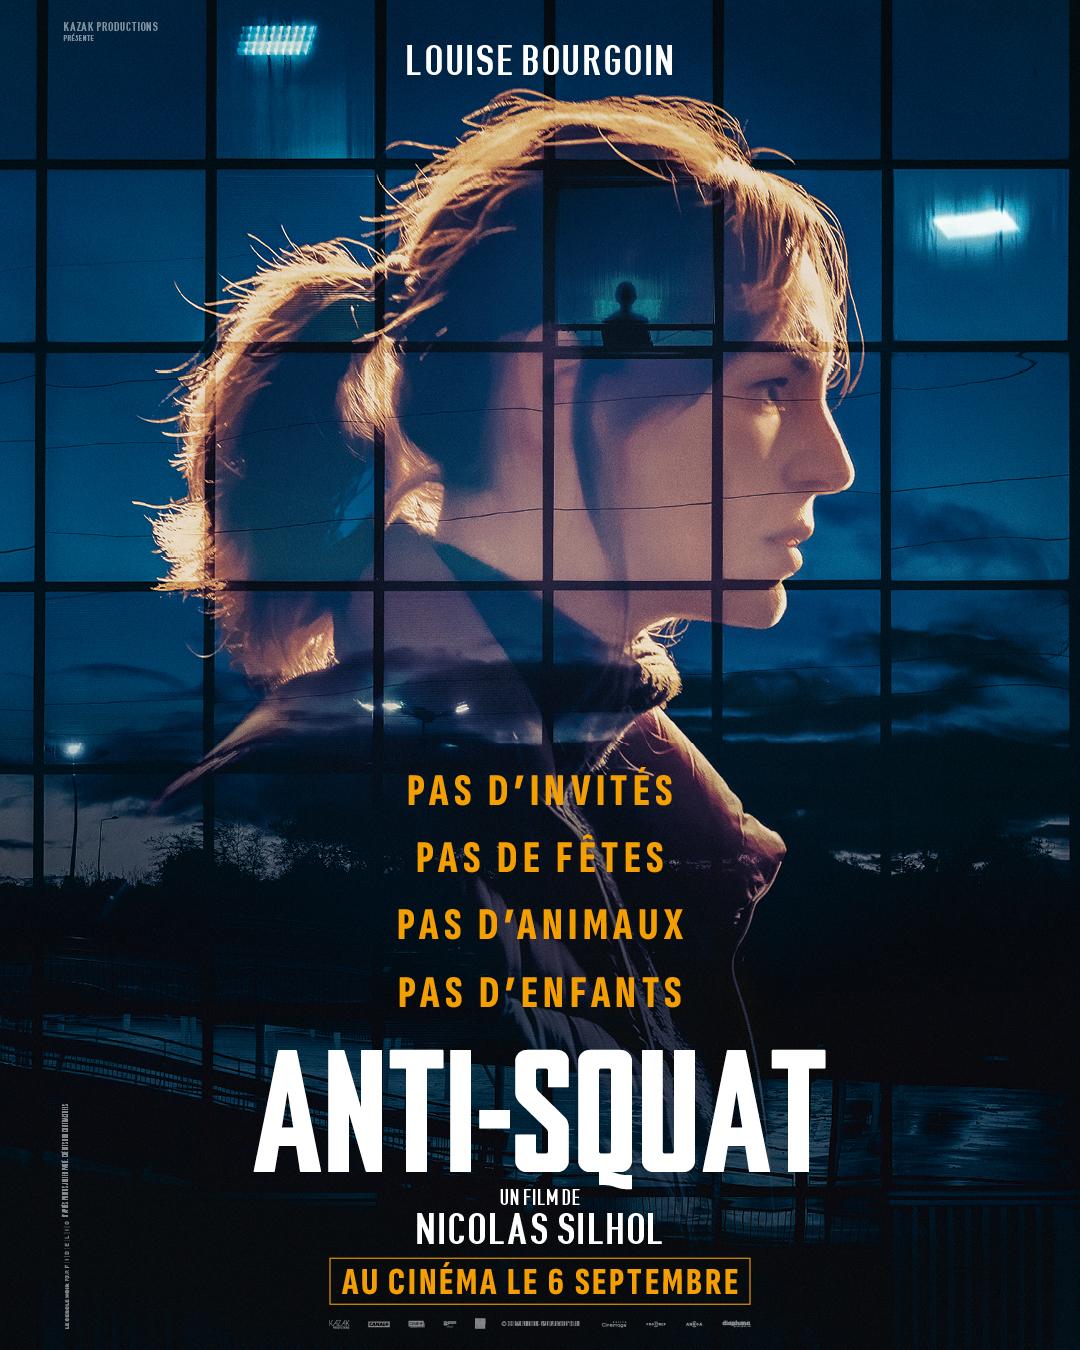 poster de Anti-squat